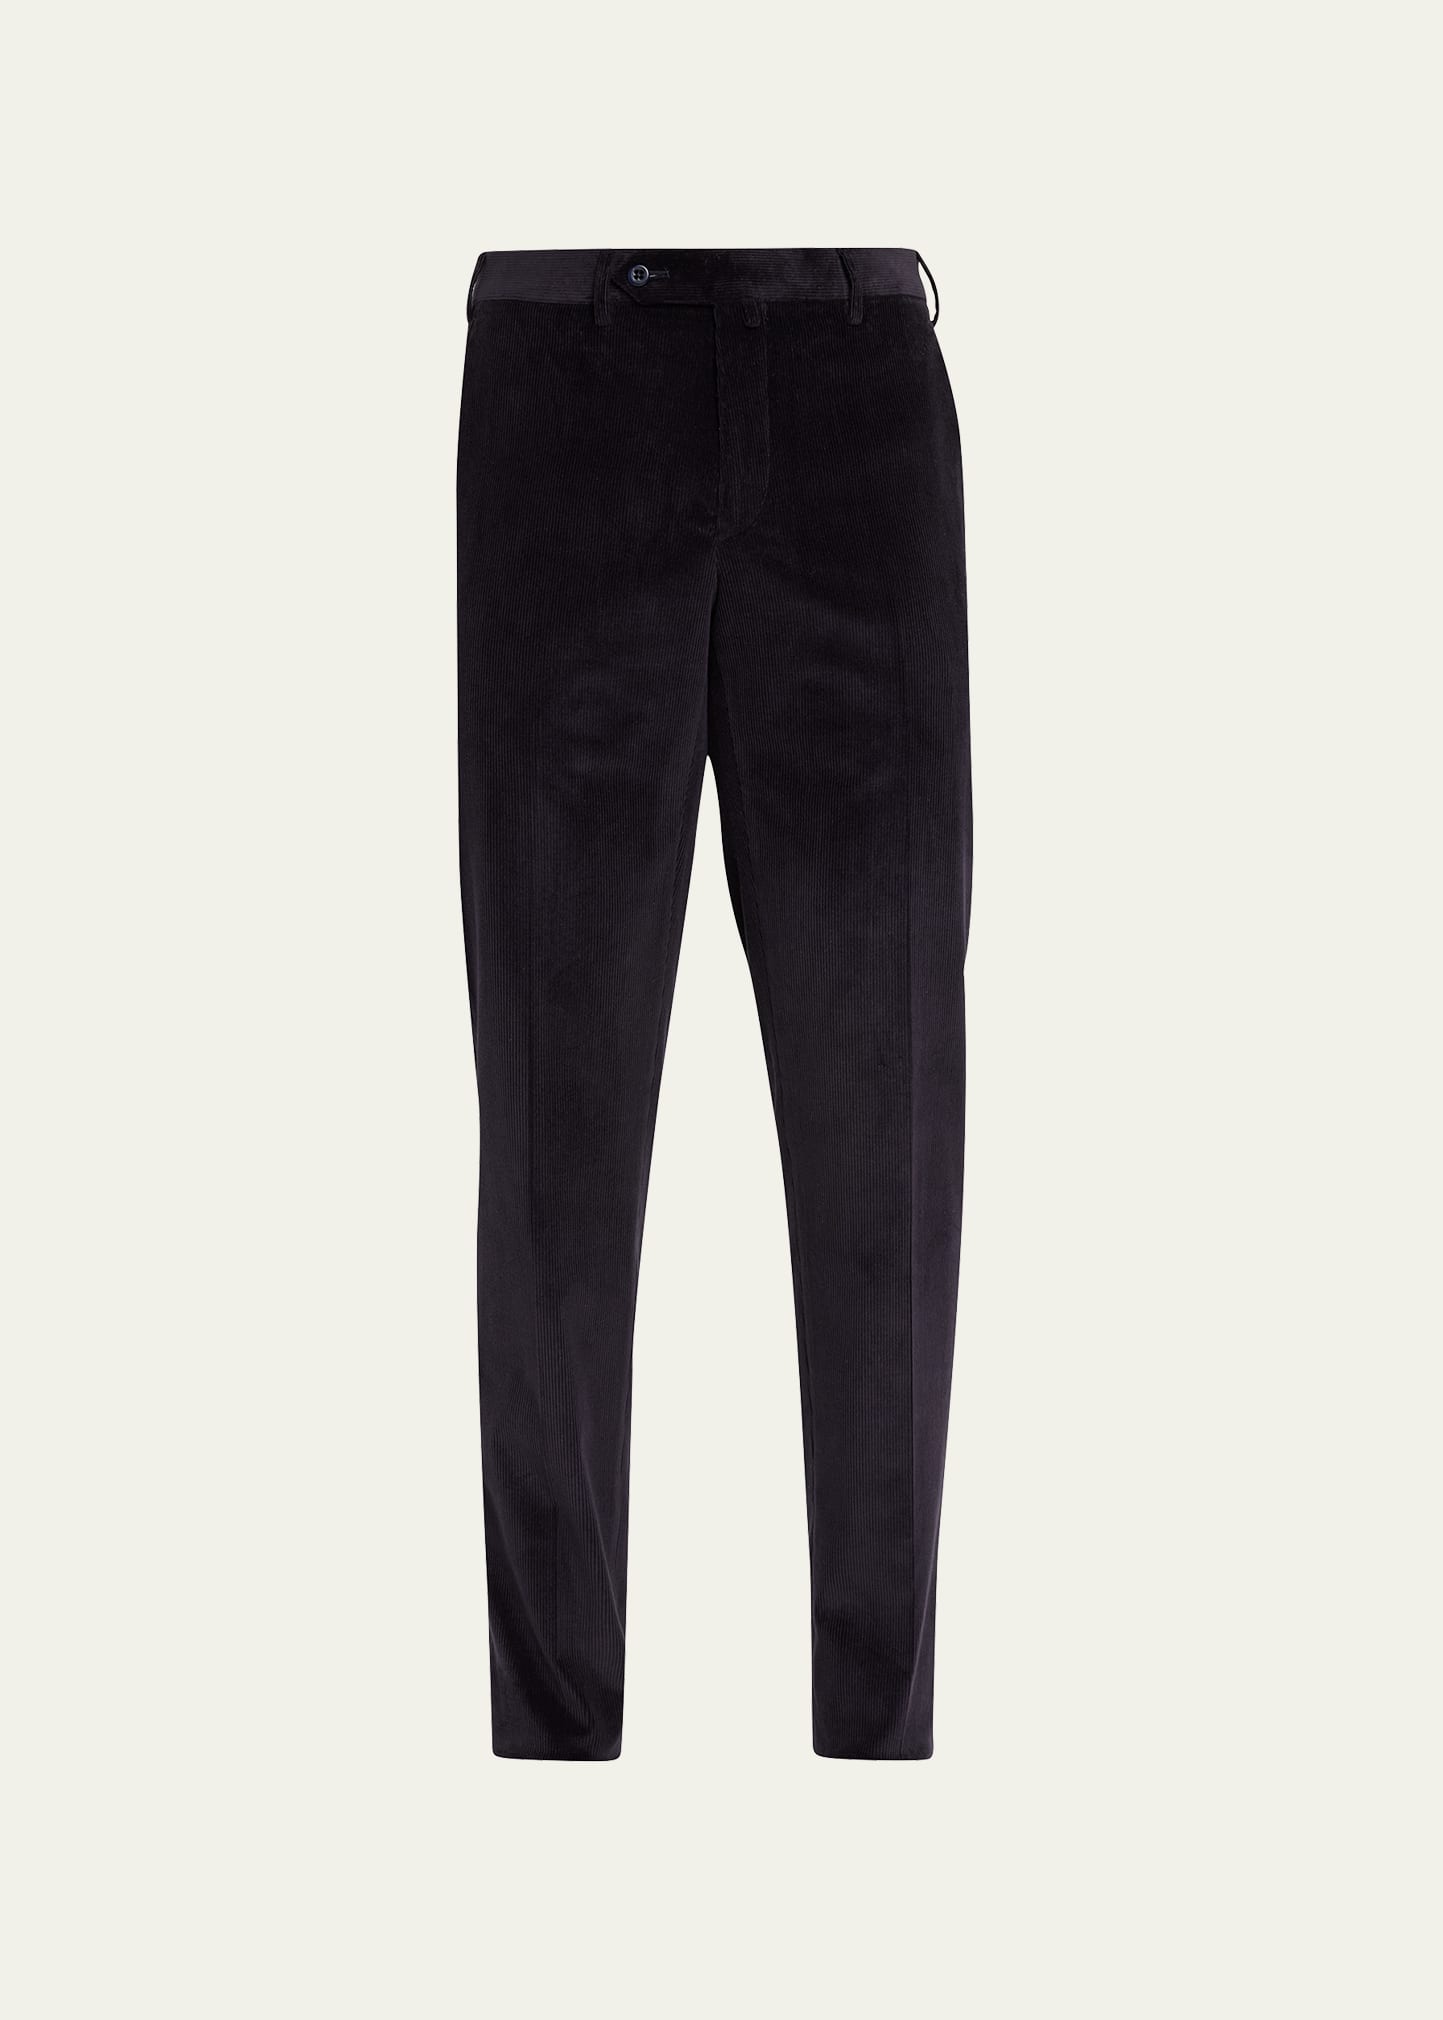 Men's Cotton-Cashmere Corduroy Pants